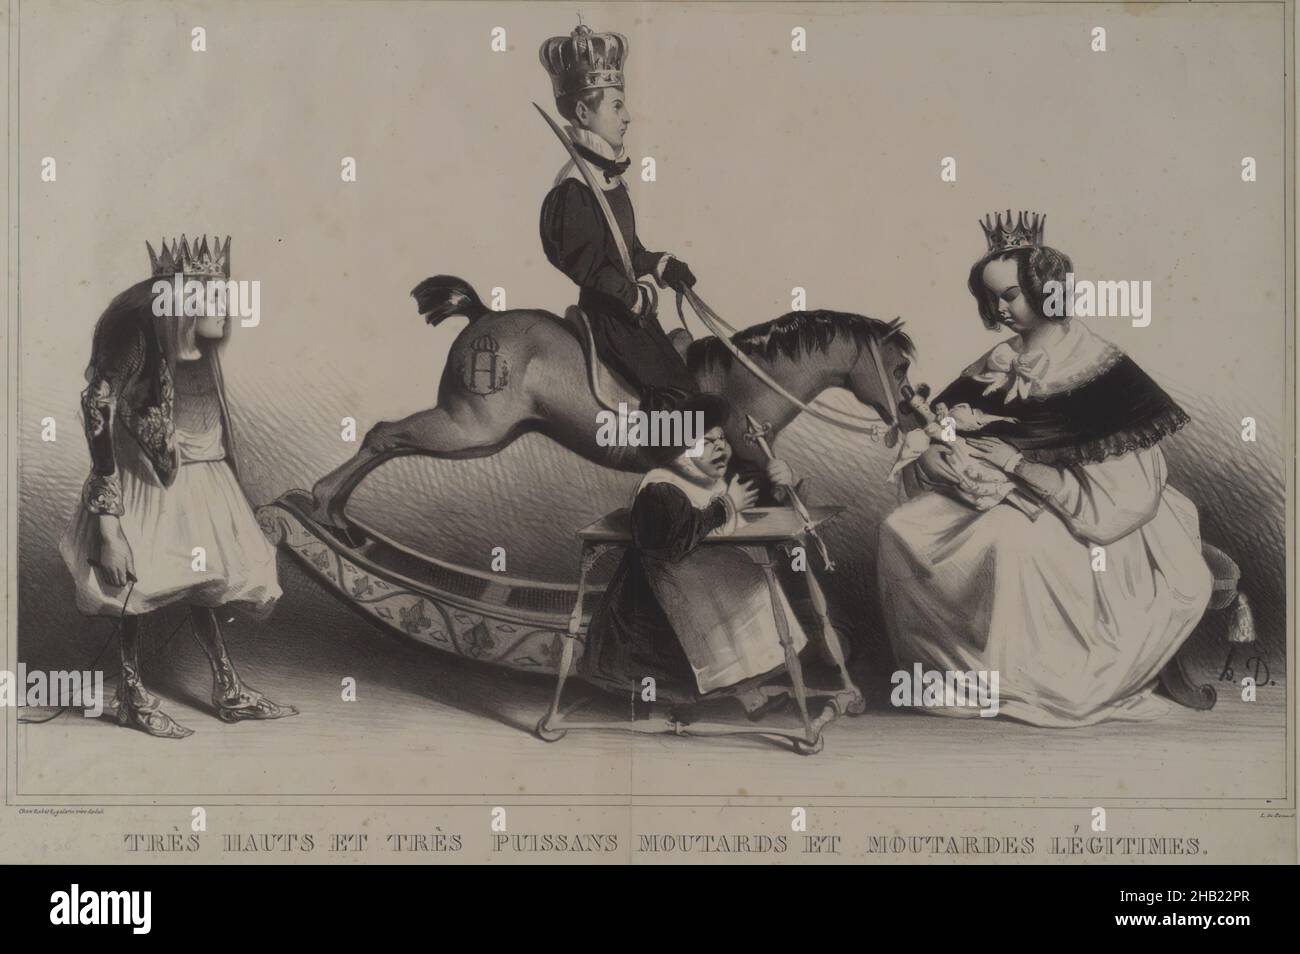 Très Hauts et Très Puissans Moutards et Moutards Légitimes, Honoré Daumier, French, 1808-1879, Lithograph on wove paper, February 1834, Sheet: 13 x 19 3/4 in., 33 x 50.2 cm Stock Photo